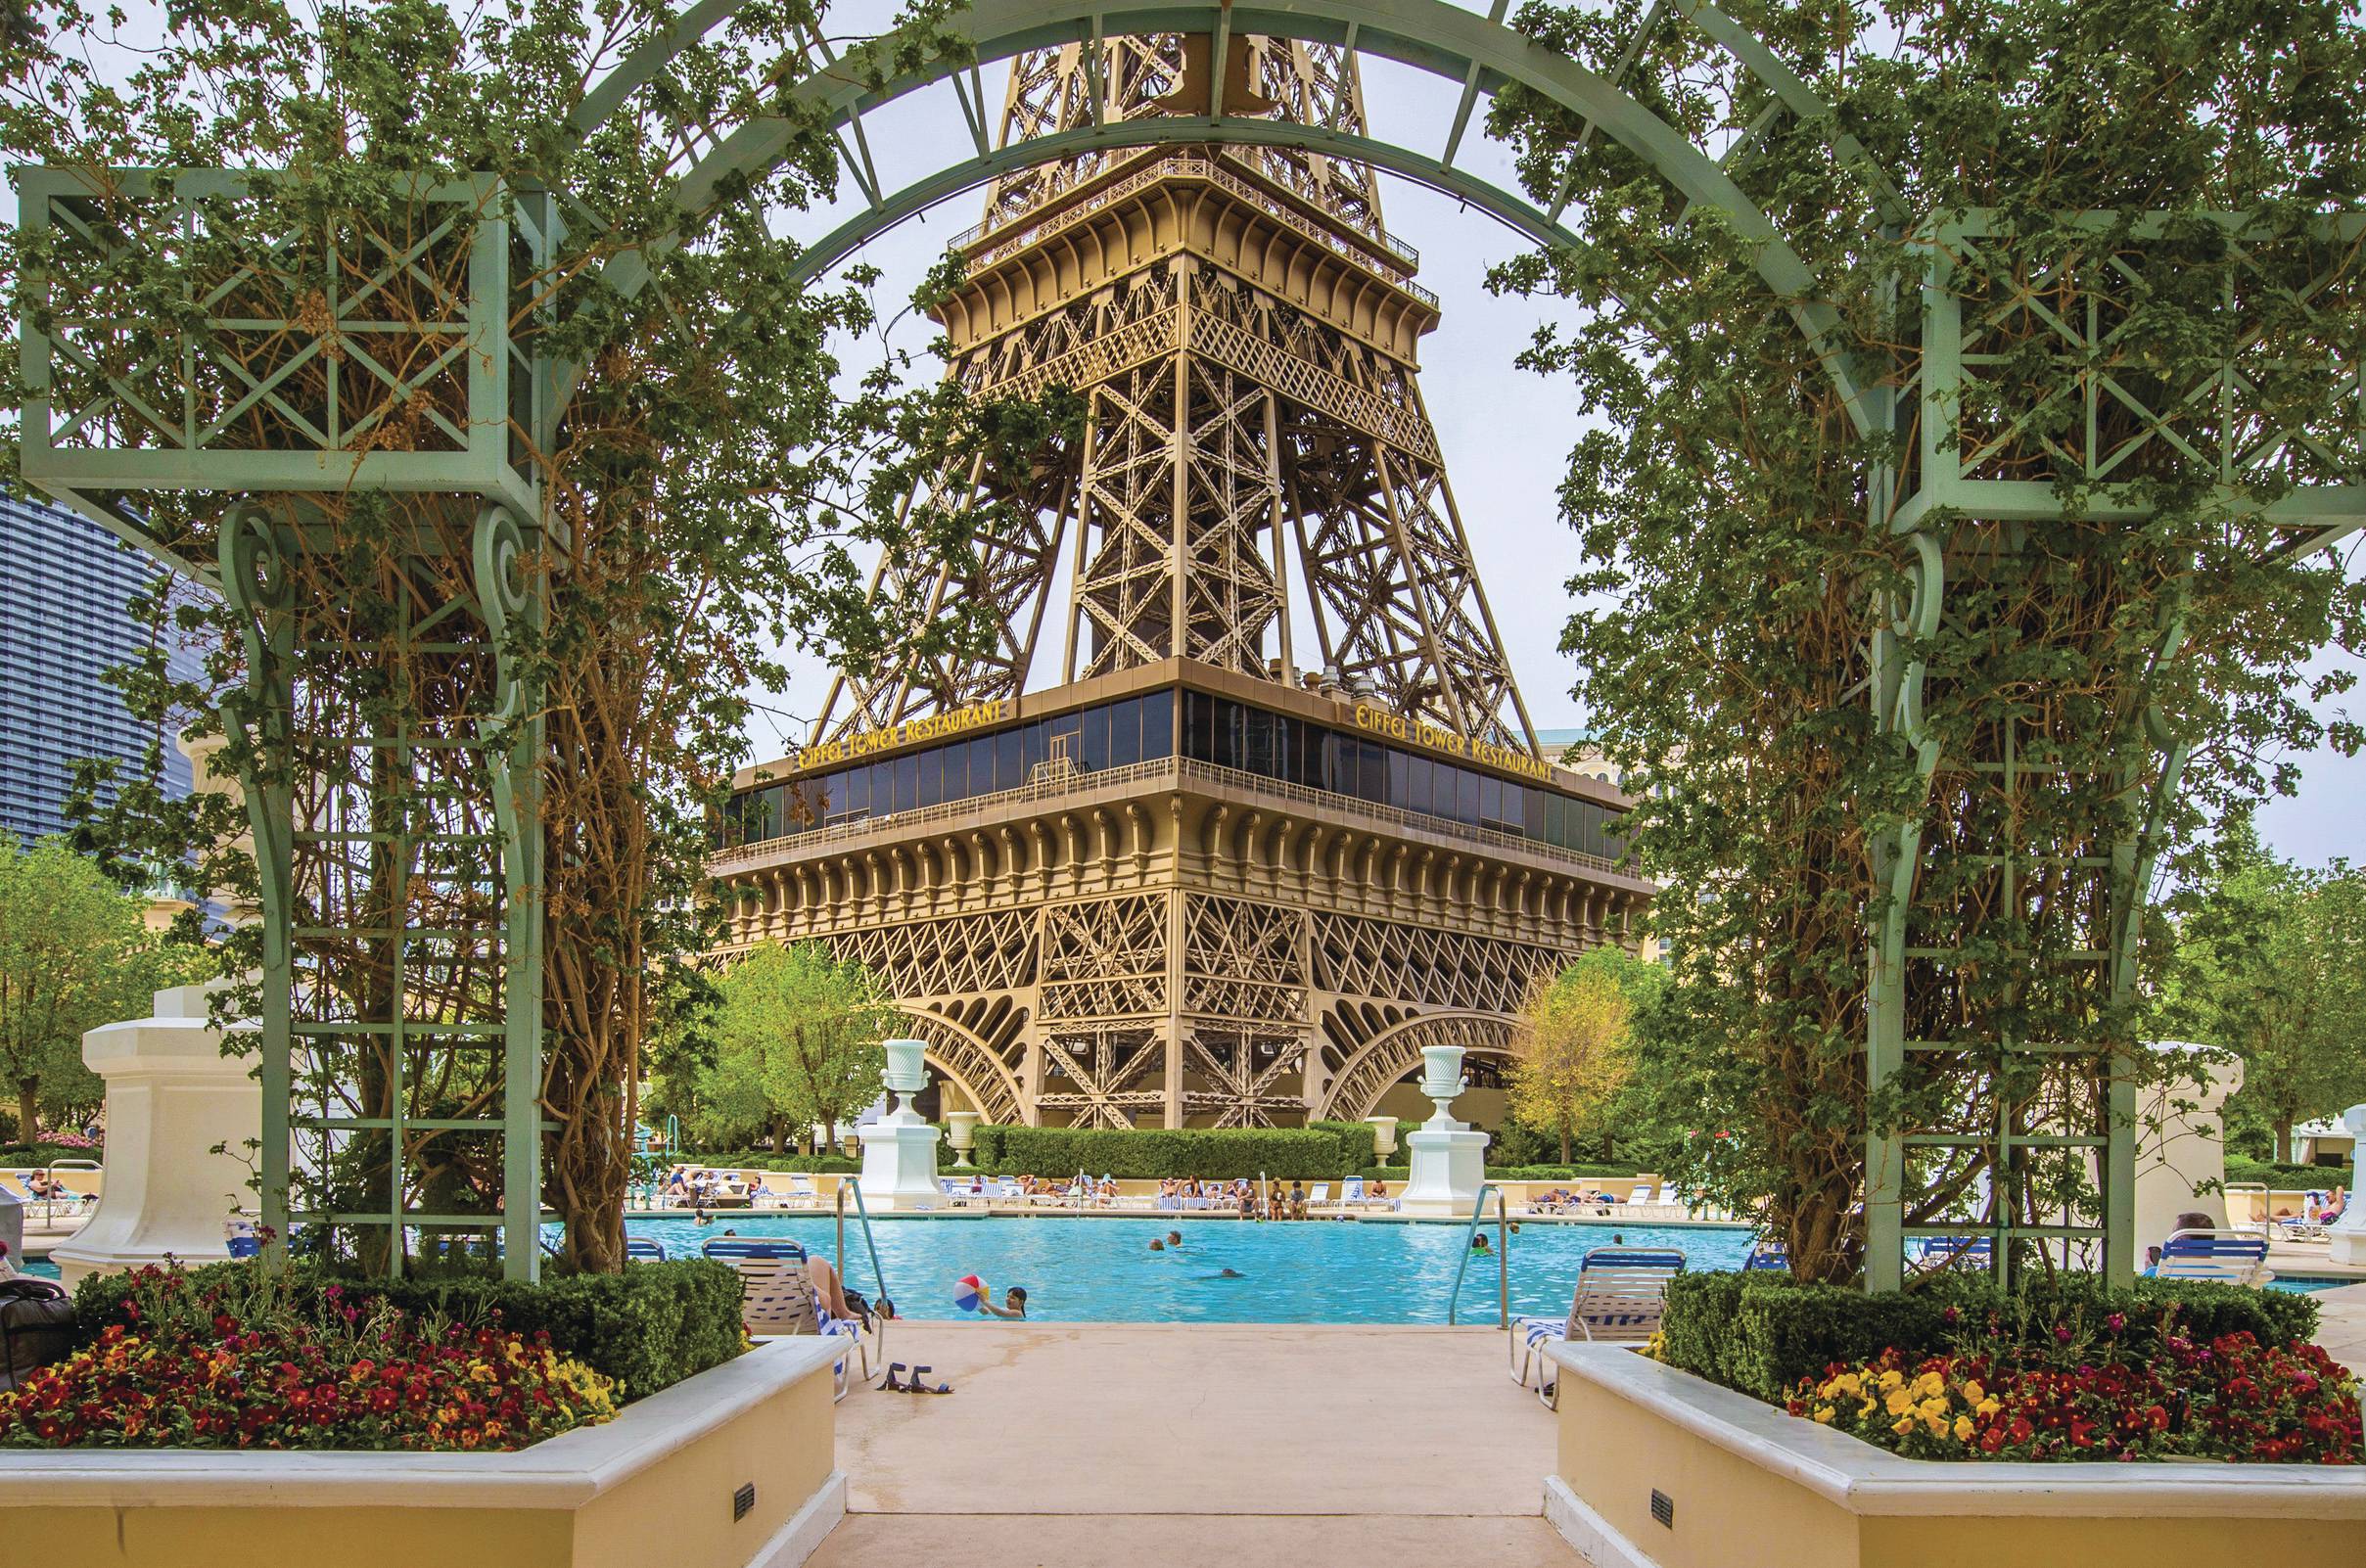 Foto de Paris Las Vegas Hotel & Casino, Paradise: Paris Hotel Pool